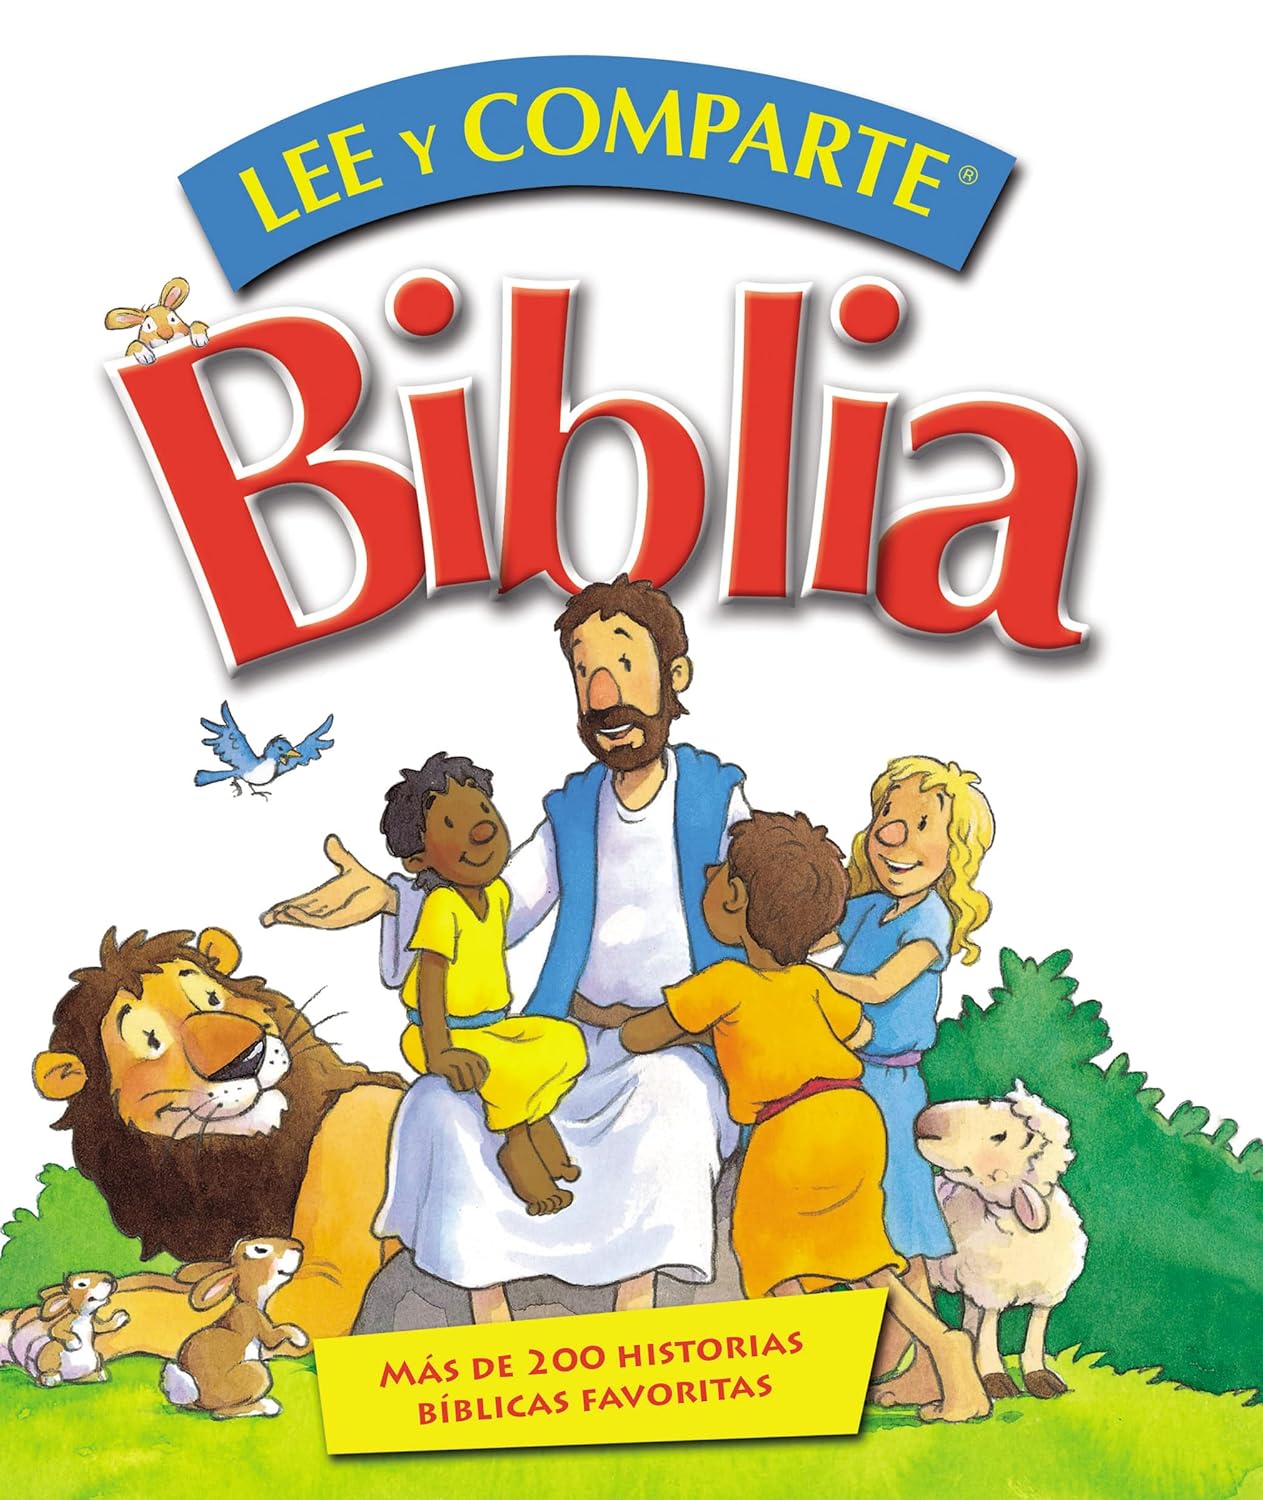 Biblia lee y comparte: Más de 200 historias bíblicas favoritas (Spanish Edition)